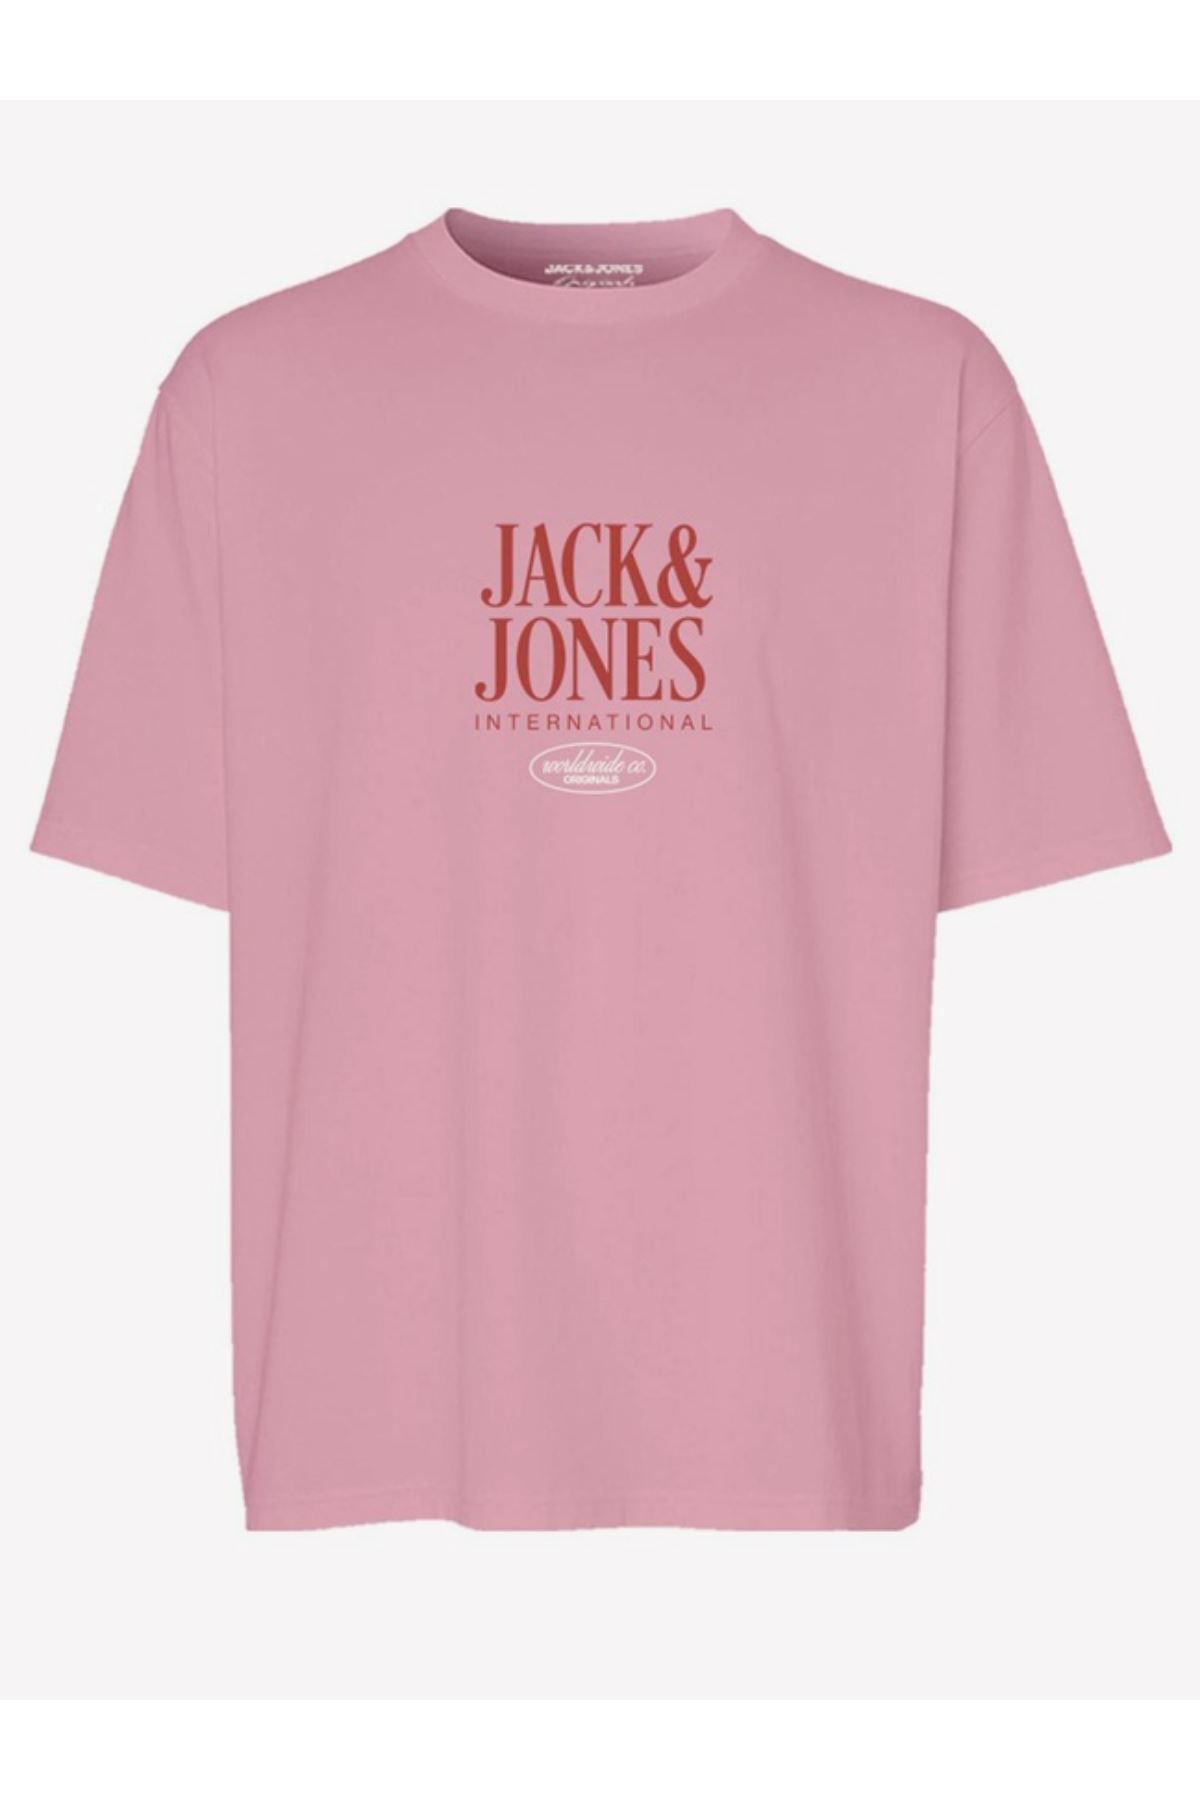 Jack & Jones Jorlucca Tee Ss Crew Neck 1 Fst Erkek T-shirt 12255636 Pink Nectar